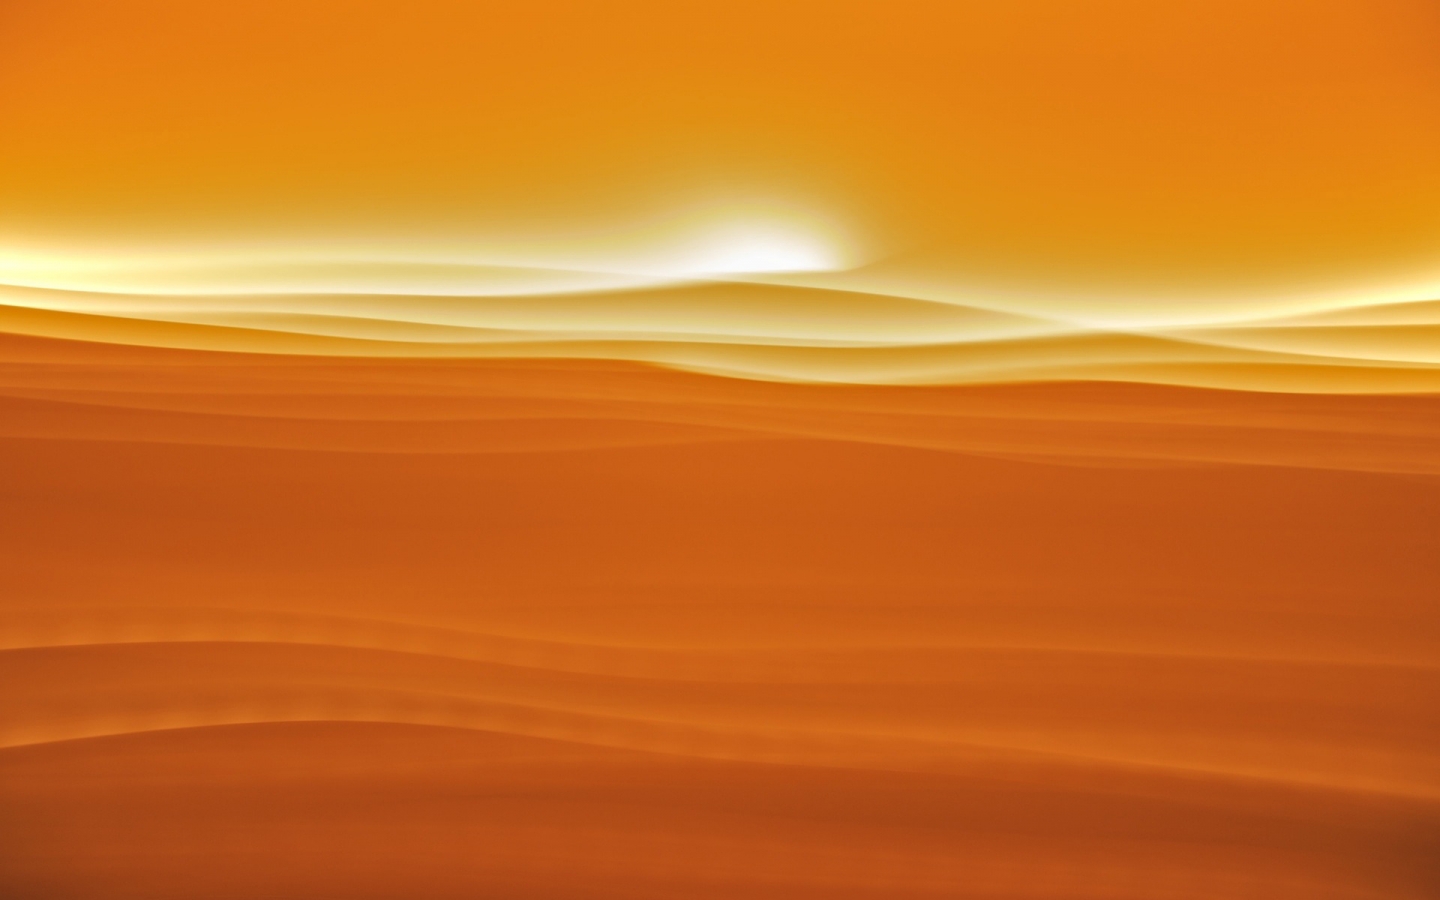 Desert sunlight for 1440 x 900 widescreen resolution